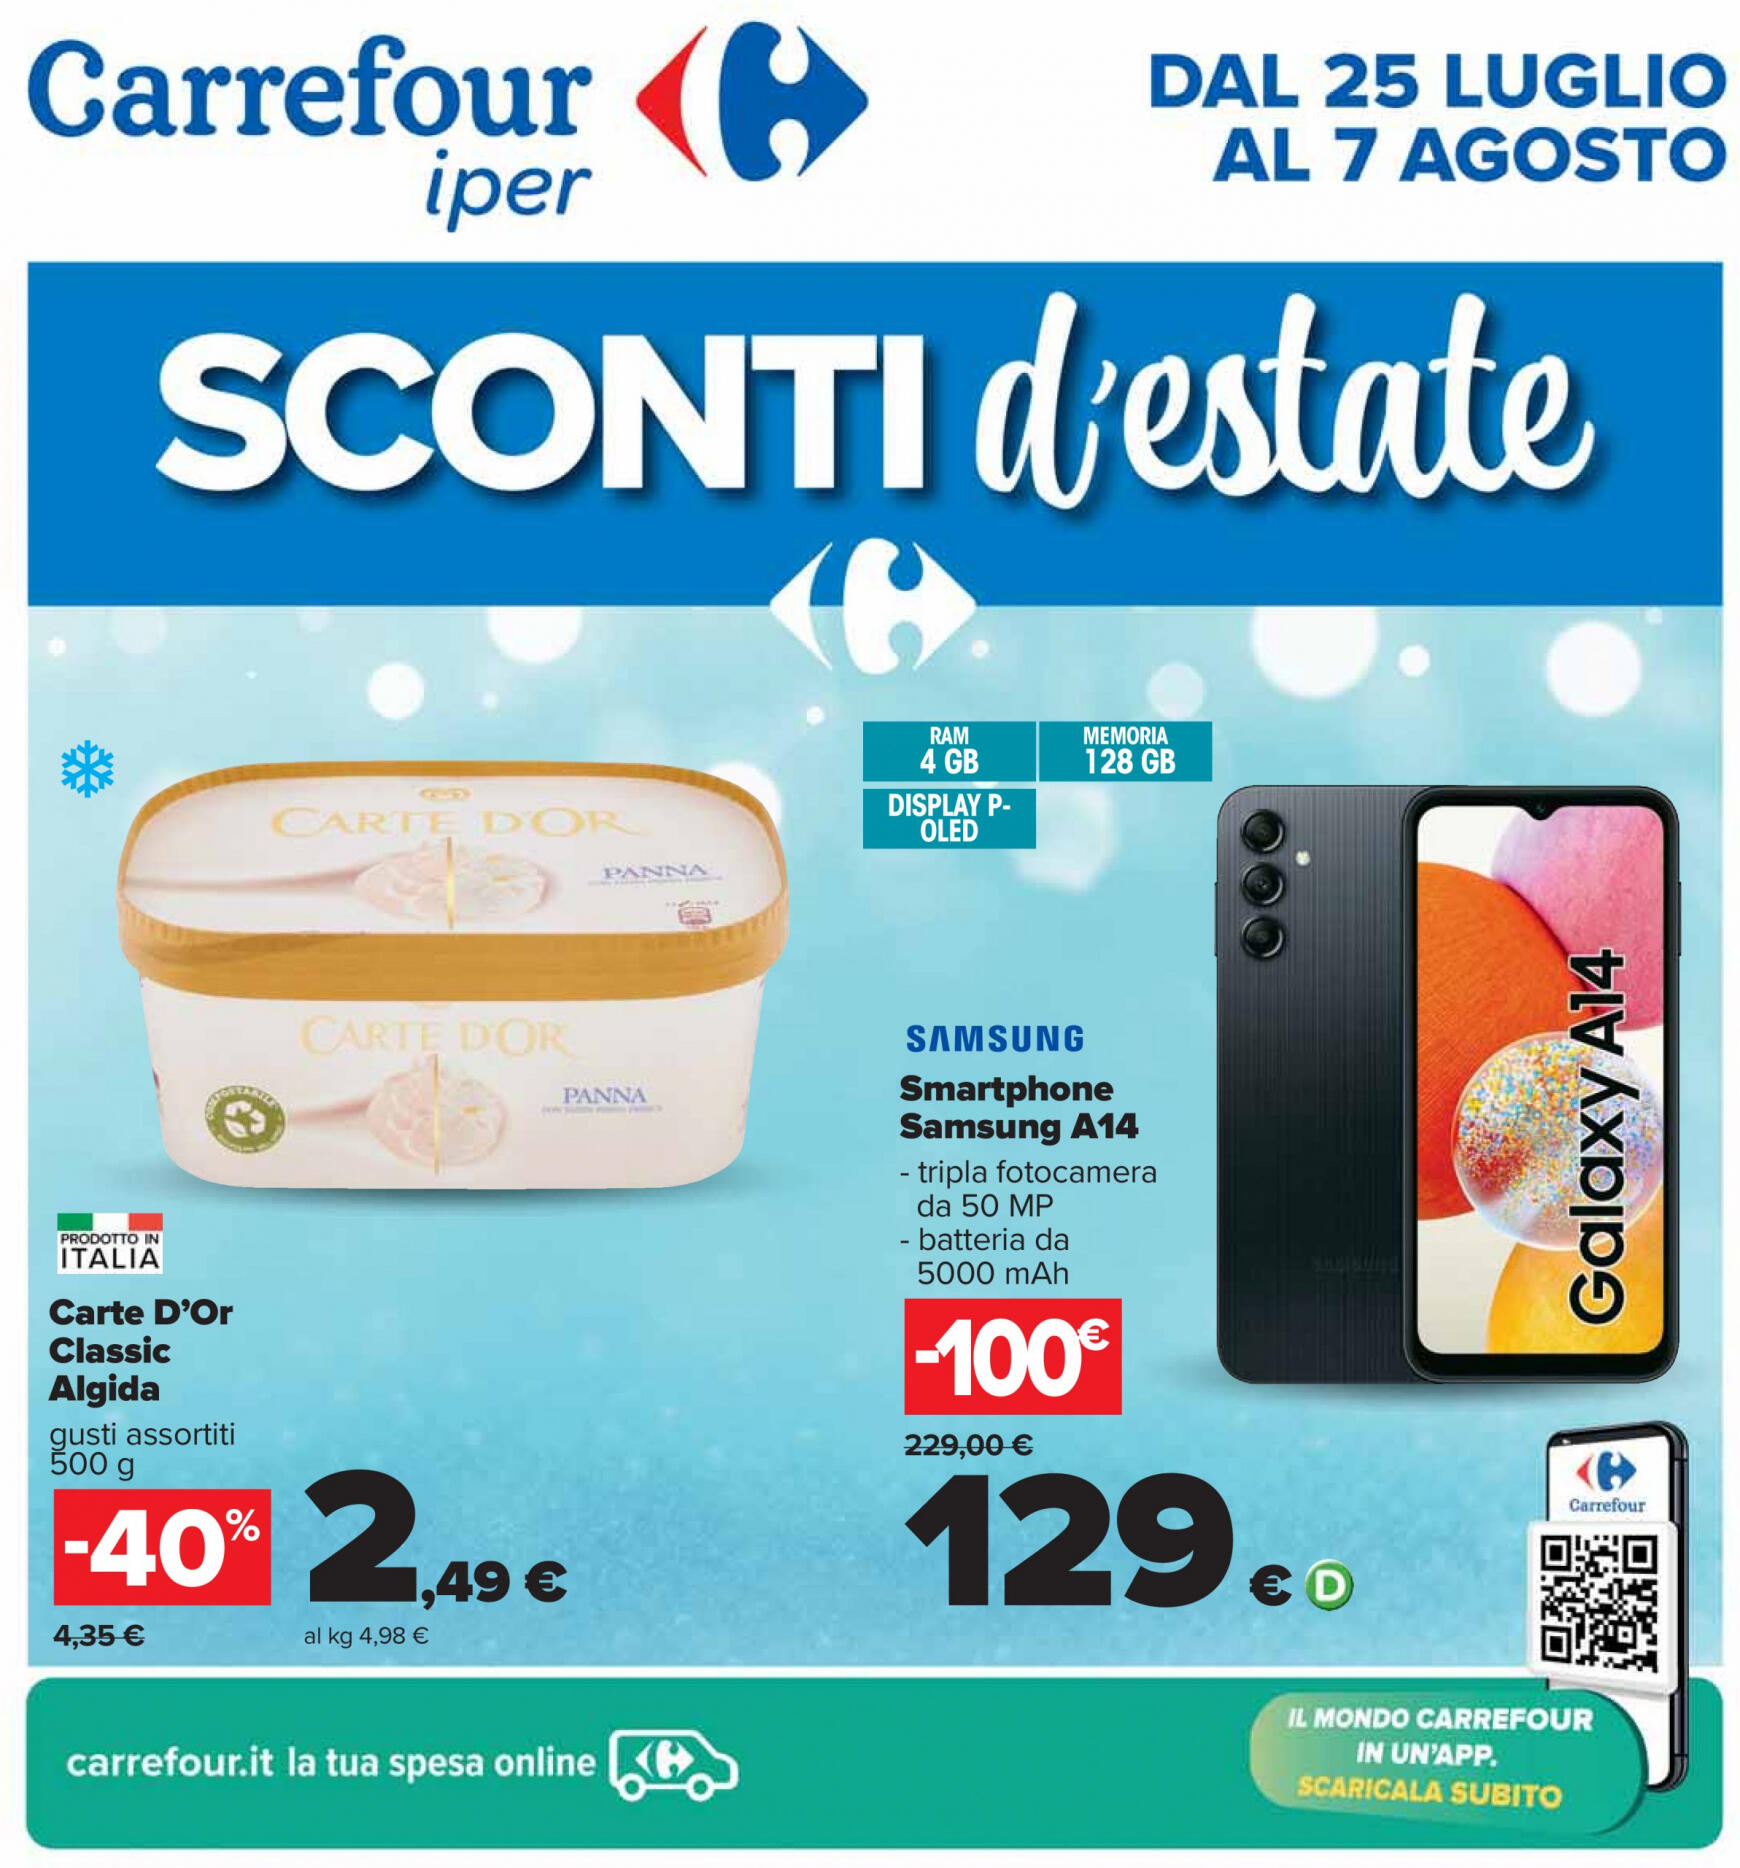 carrefour - Nuovo volantino Carrefour - Sconti d'estate 25.07. - 07.08.